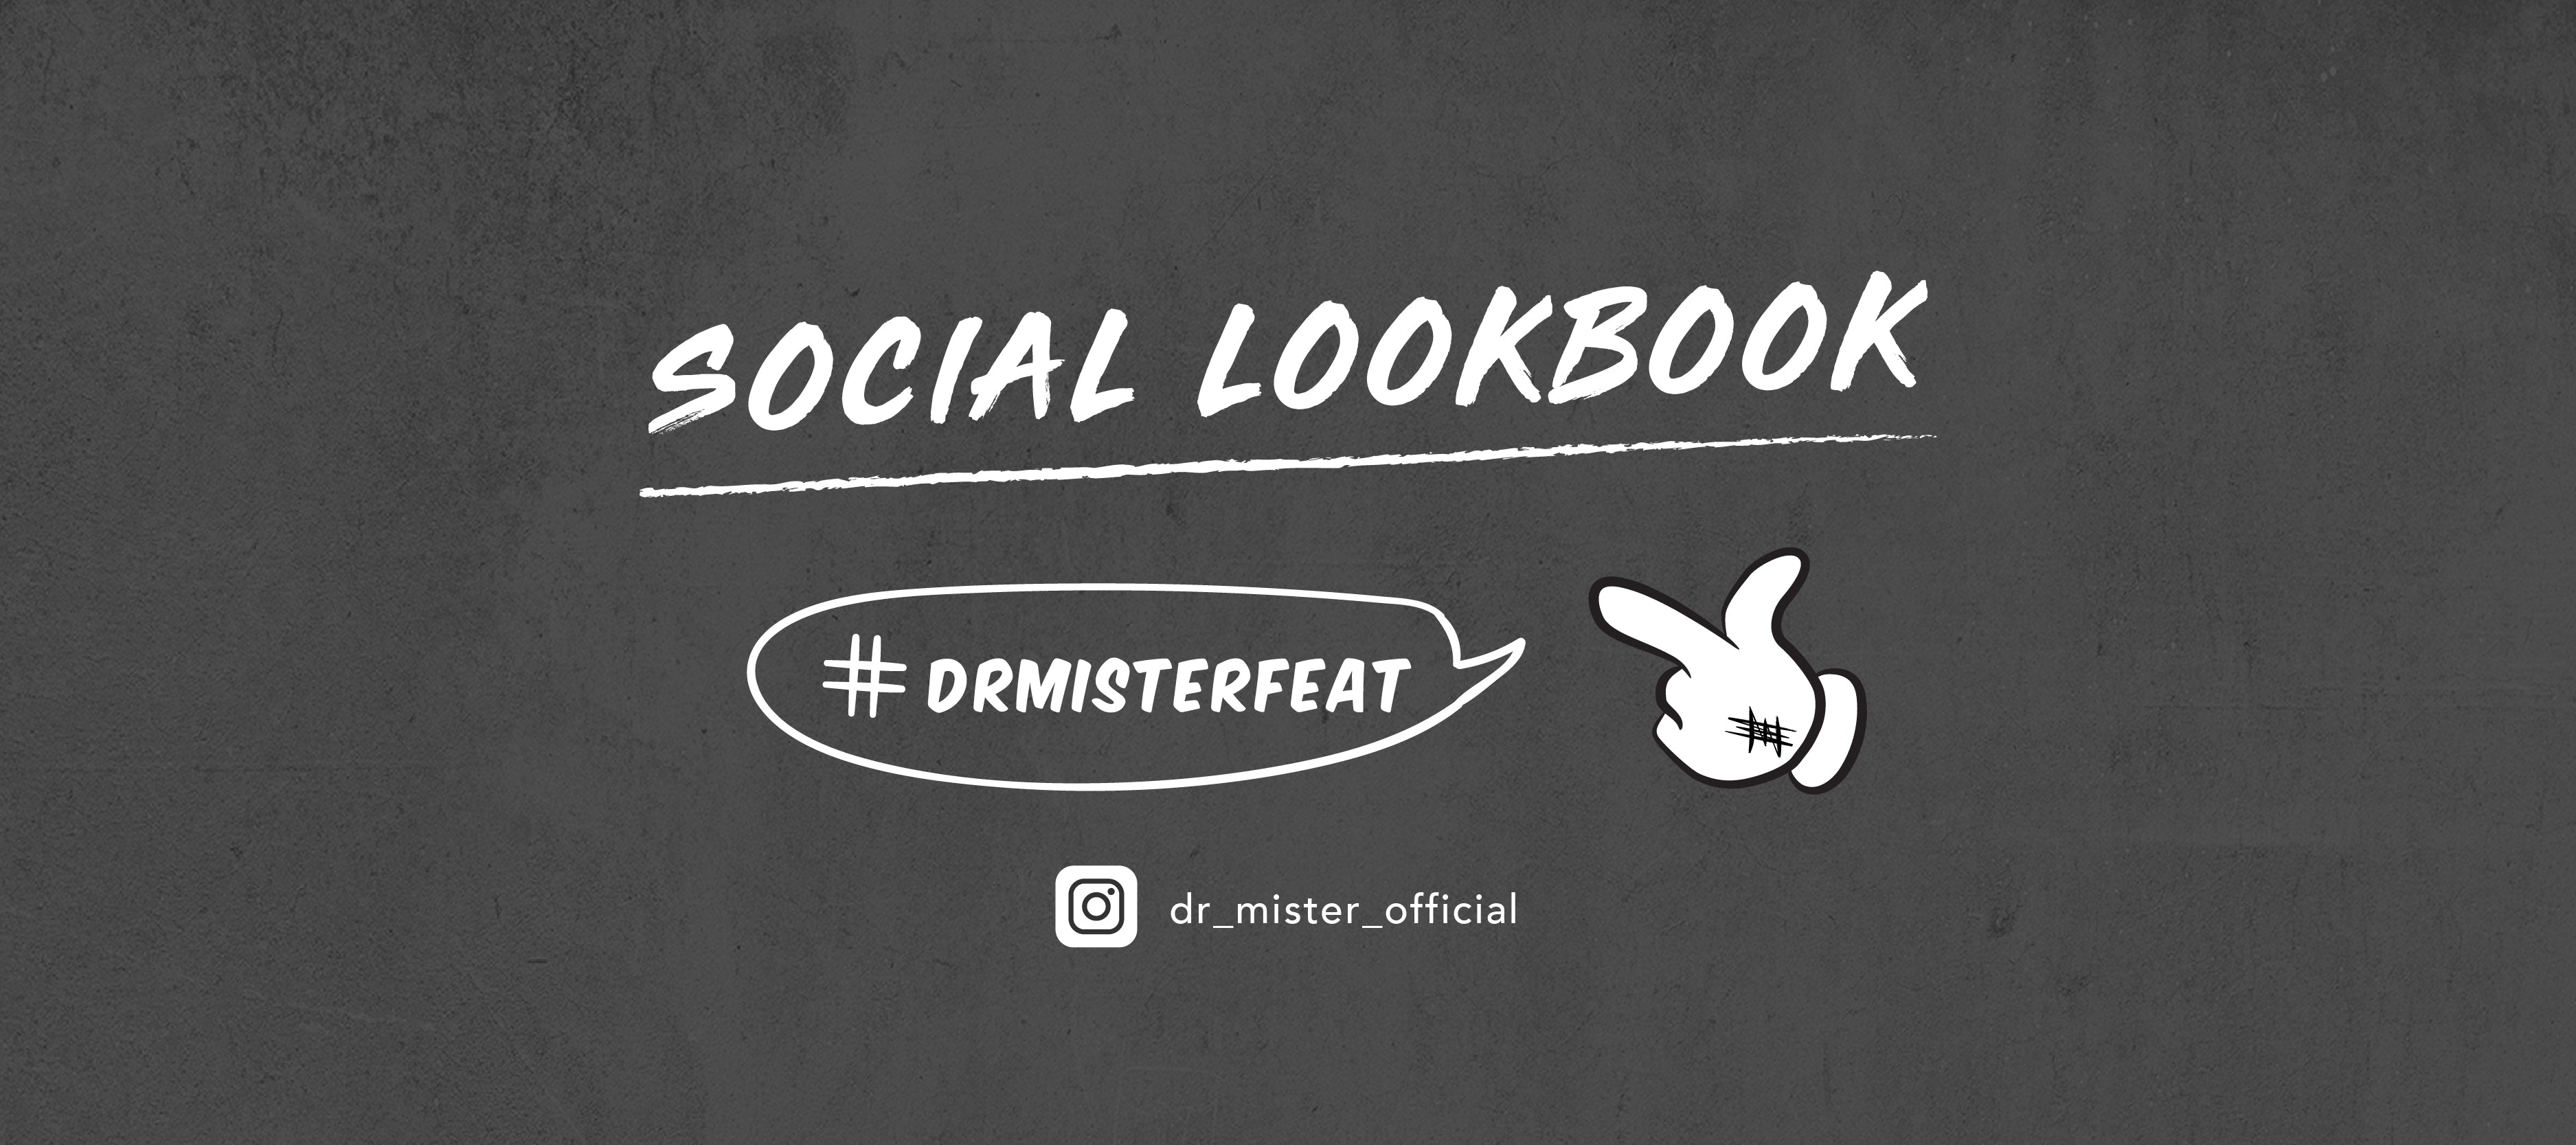 The Social Lookbook EP3 - weix____